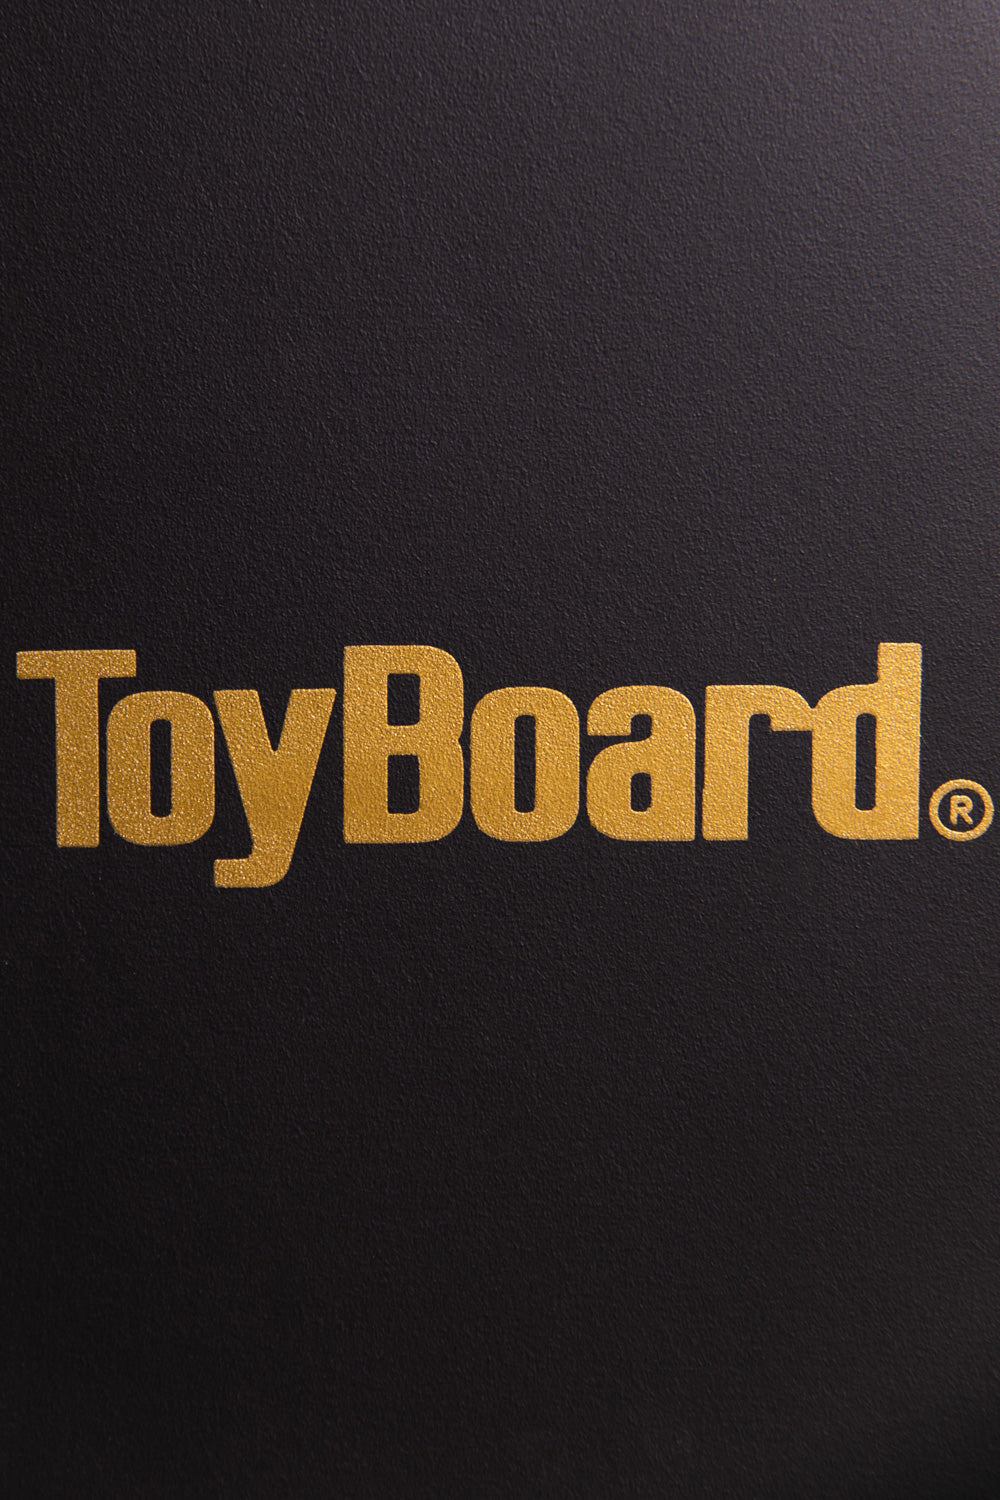 ToyBoard logo in golden letters